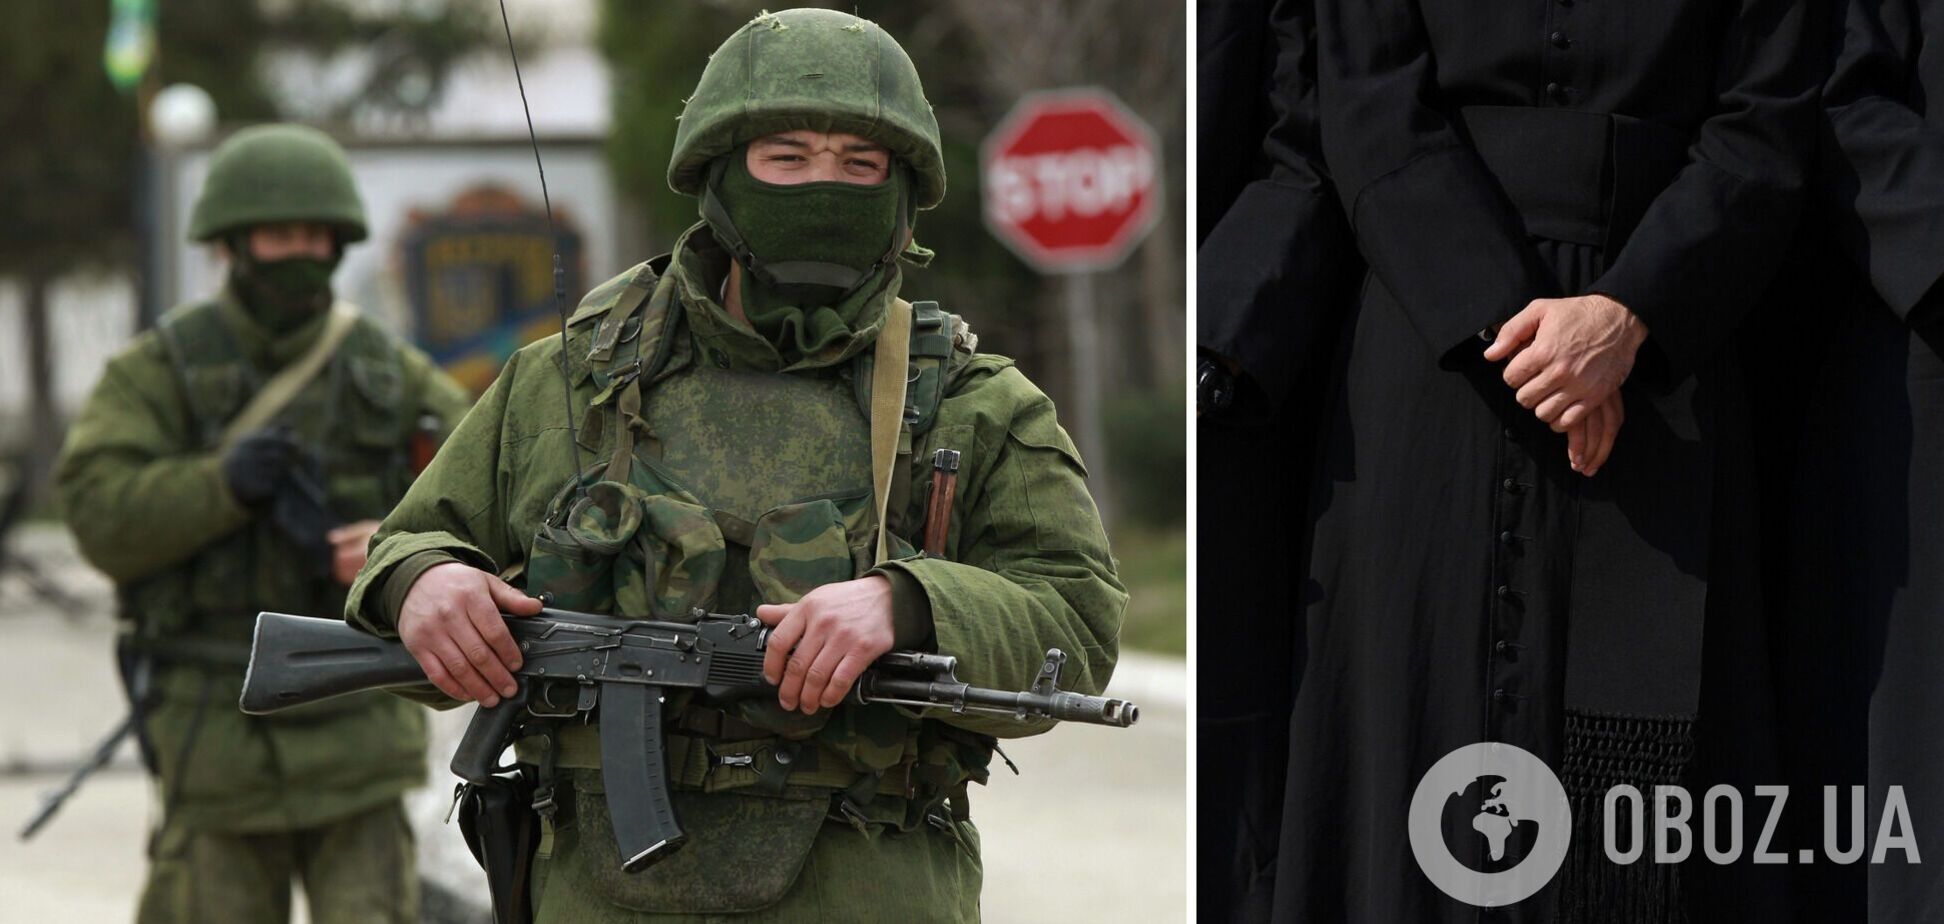 Гаага чекає! На Київщині окупанти розстріляли священника у рясі